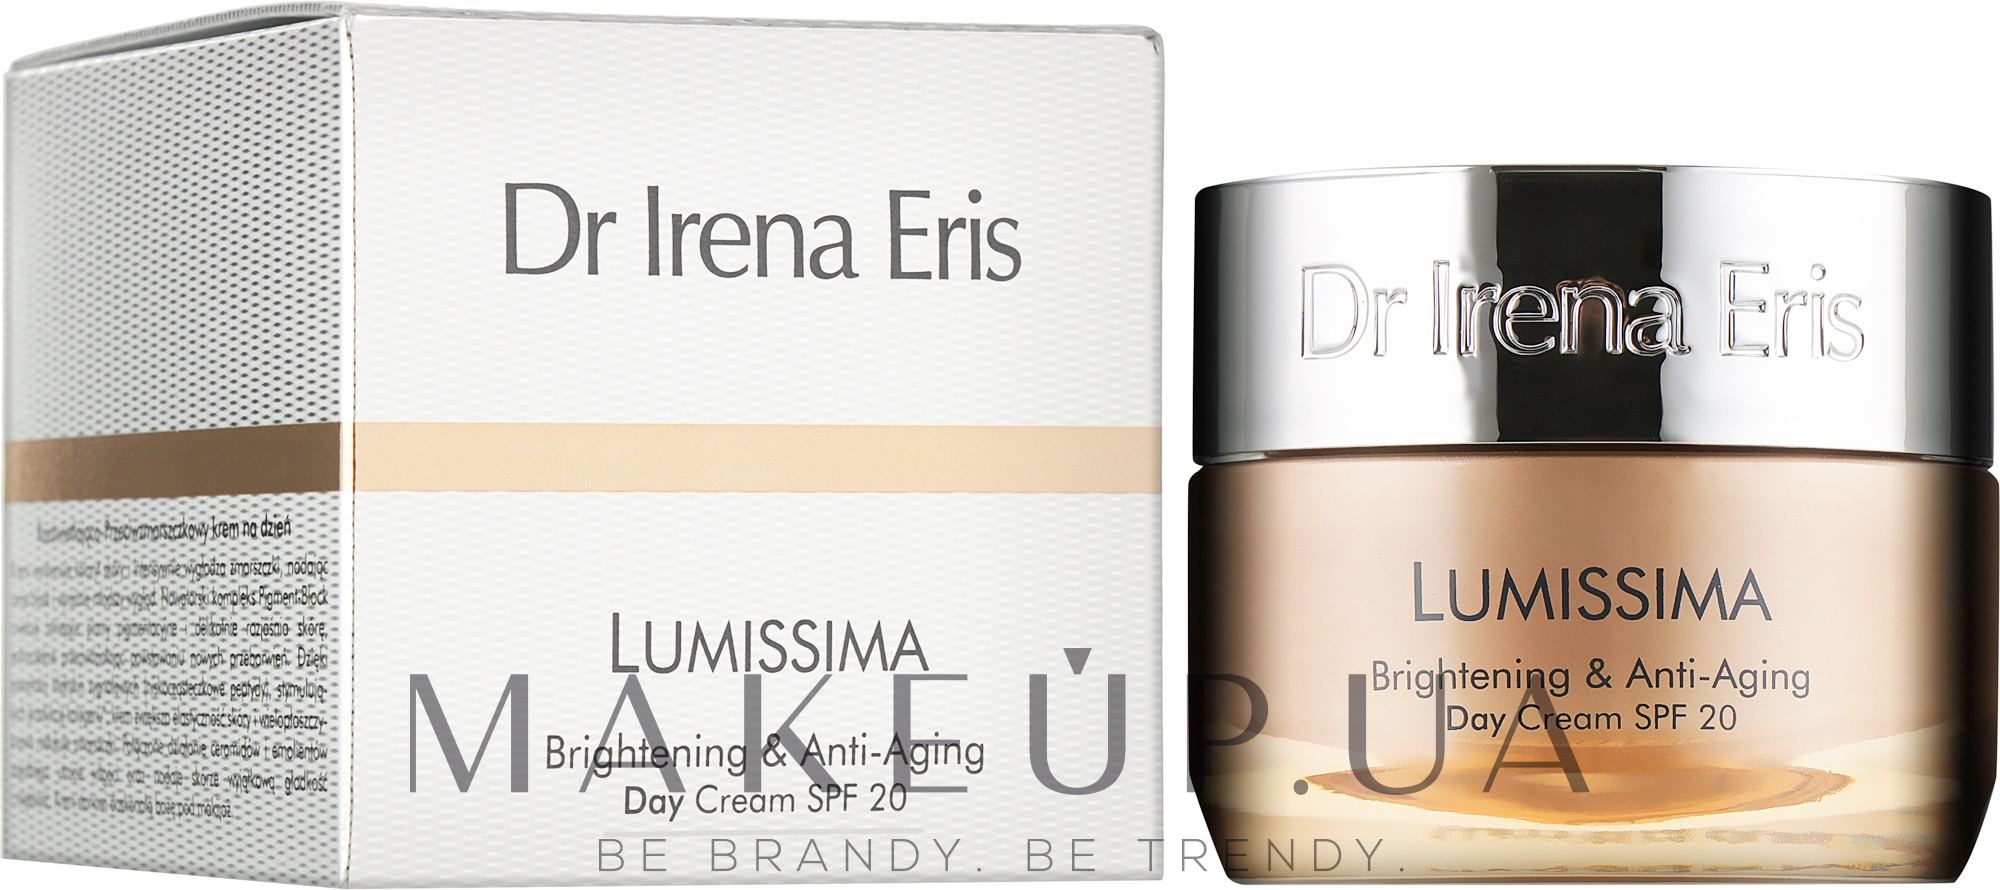 Освітлюючий омолоджувальний денний крем - Dr. Irena Eris Lumissima Brightening & Anti-Aging Day Cream SPF 20 — фото 50ml